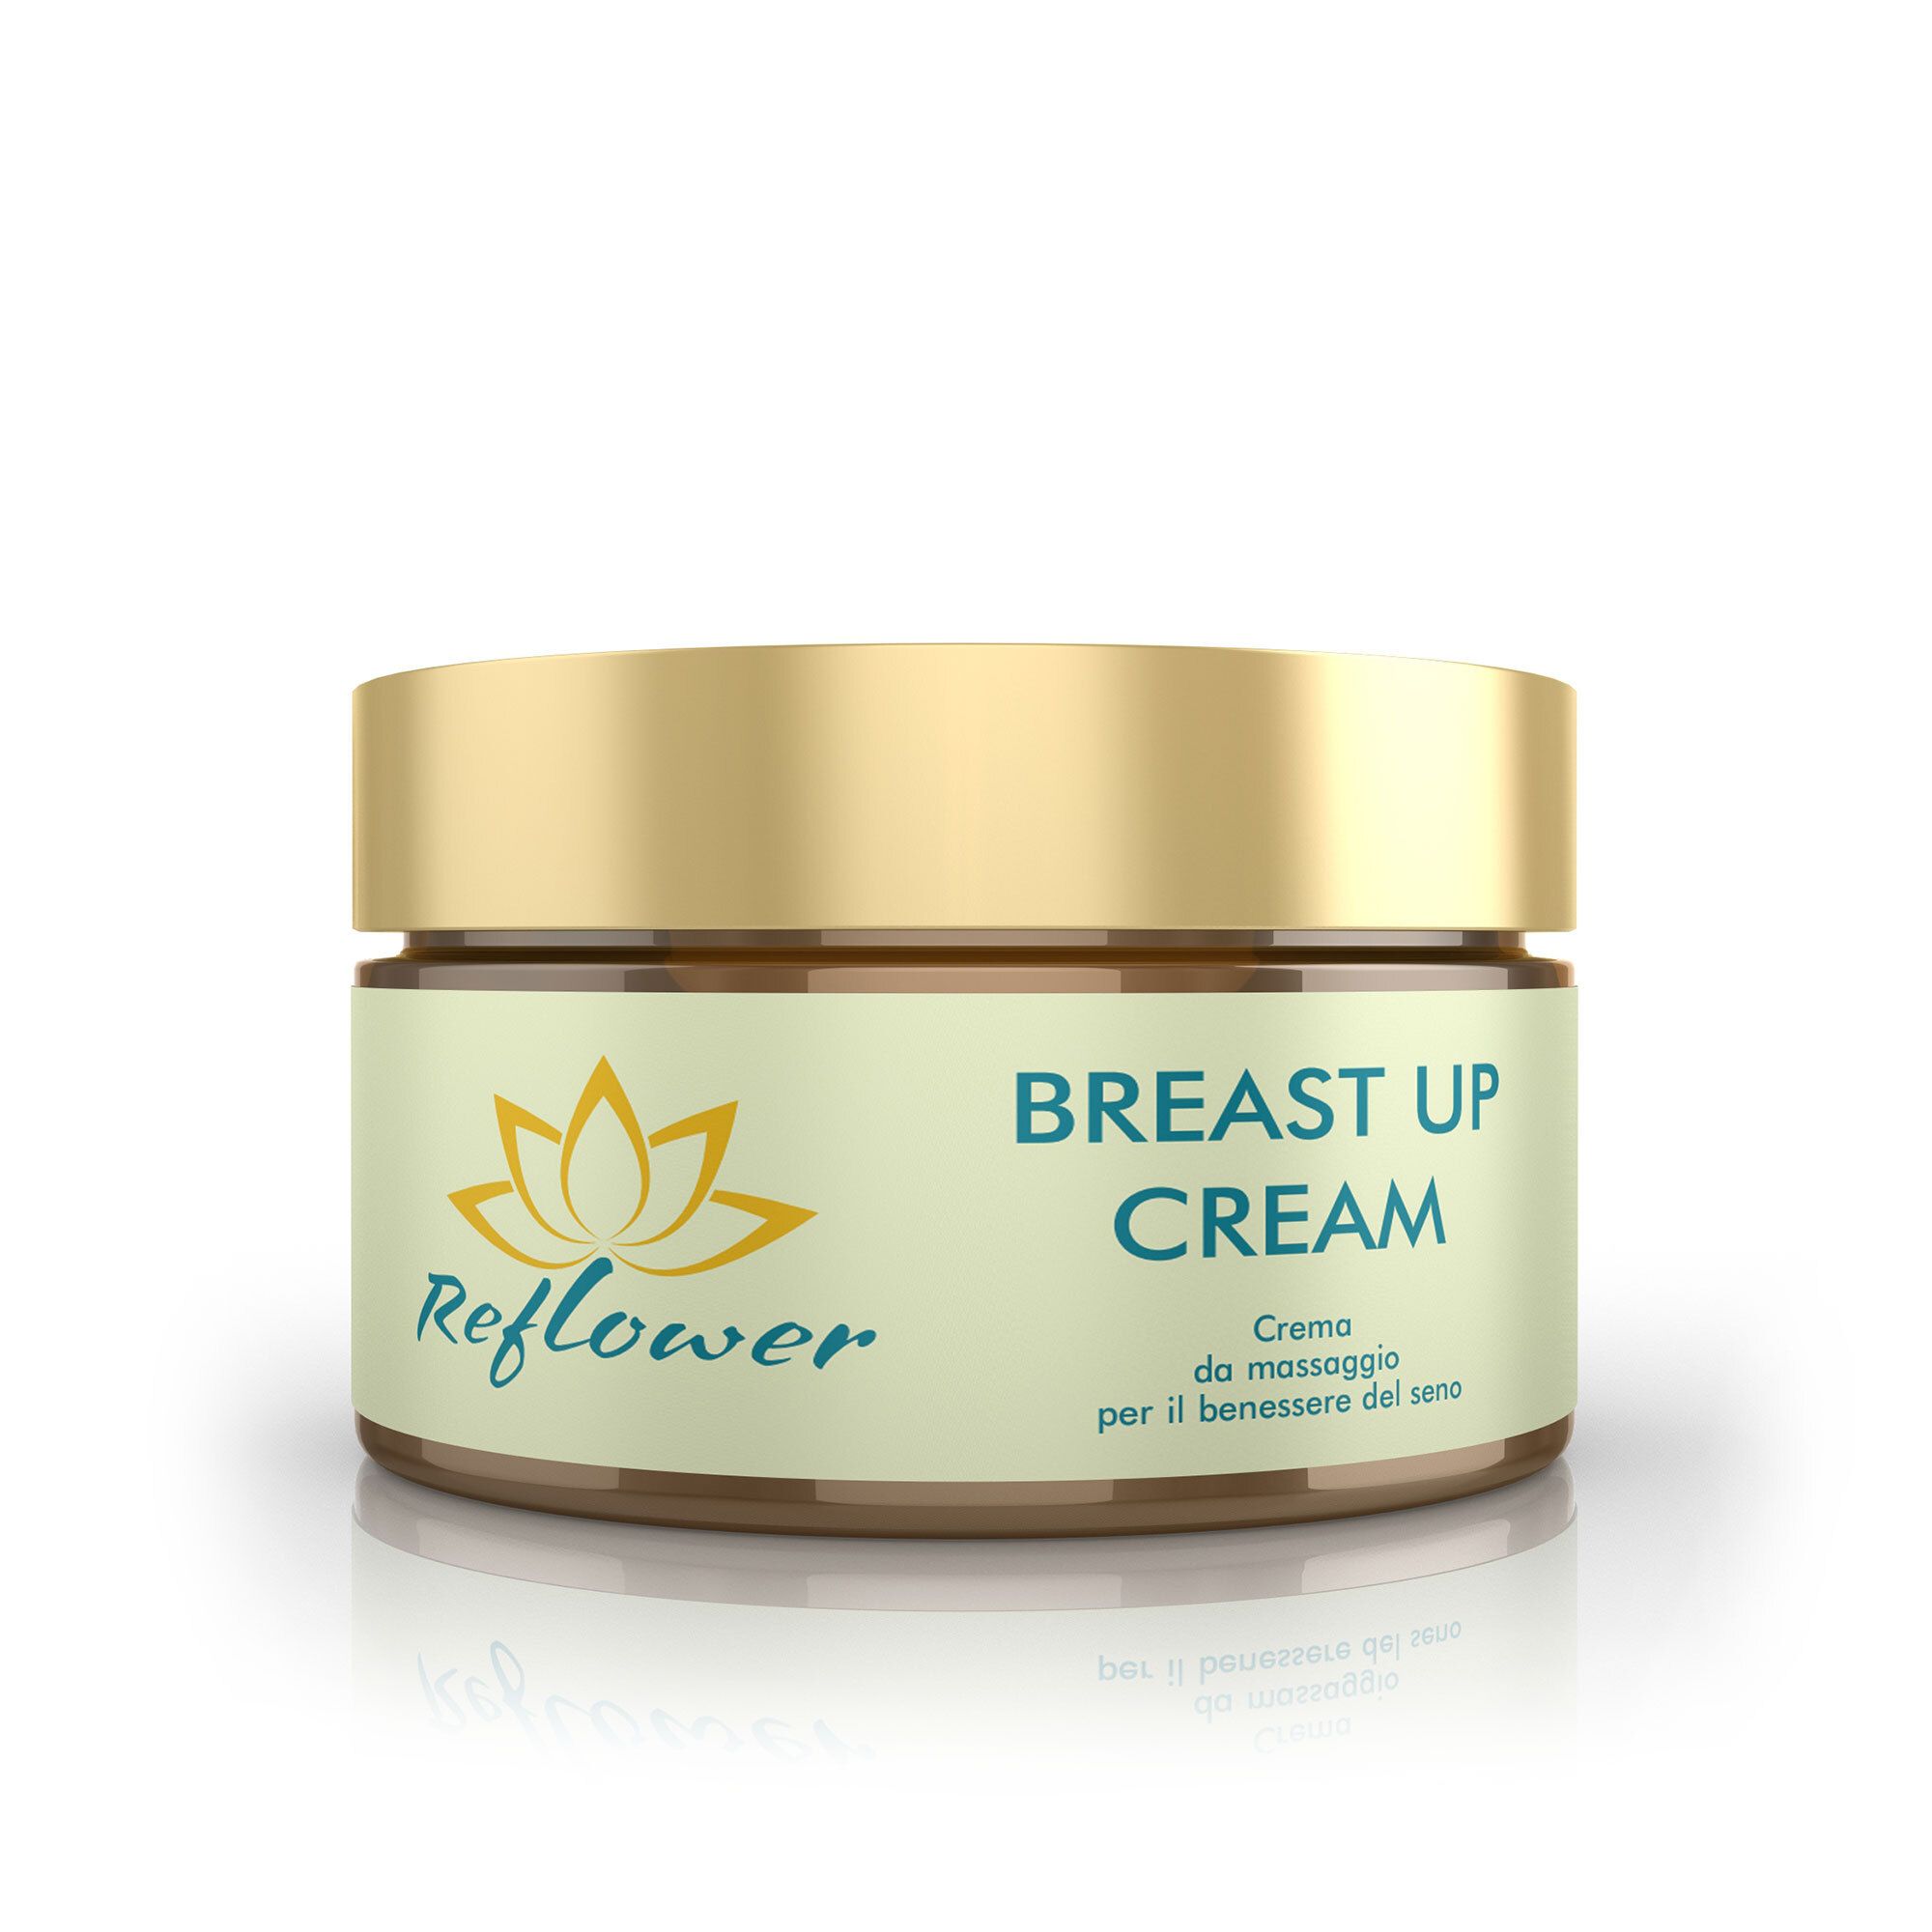 Breast Up Crema da massaggio per seno